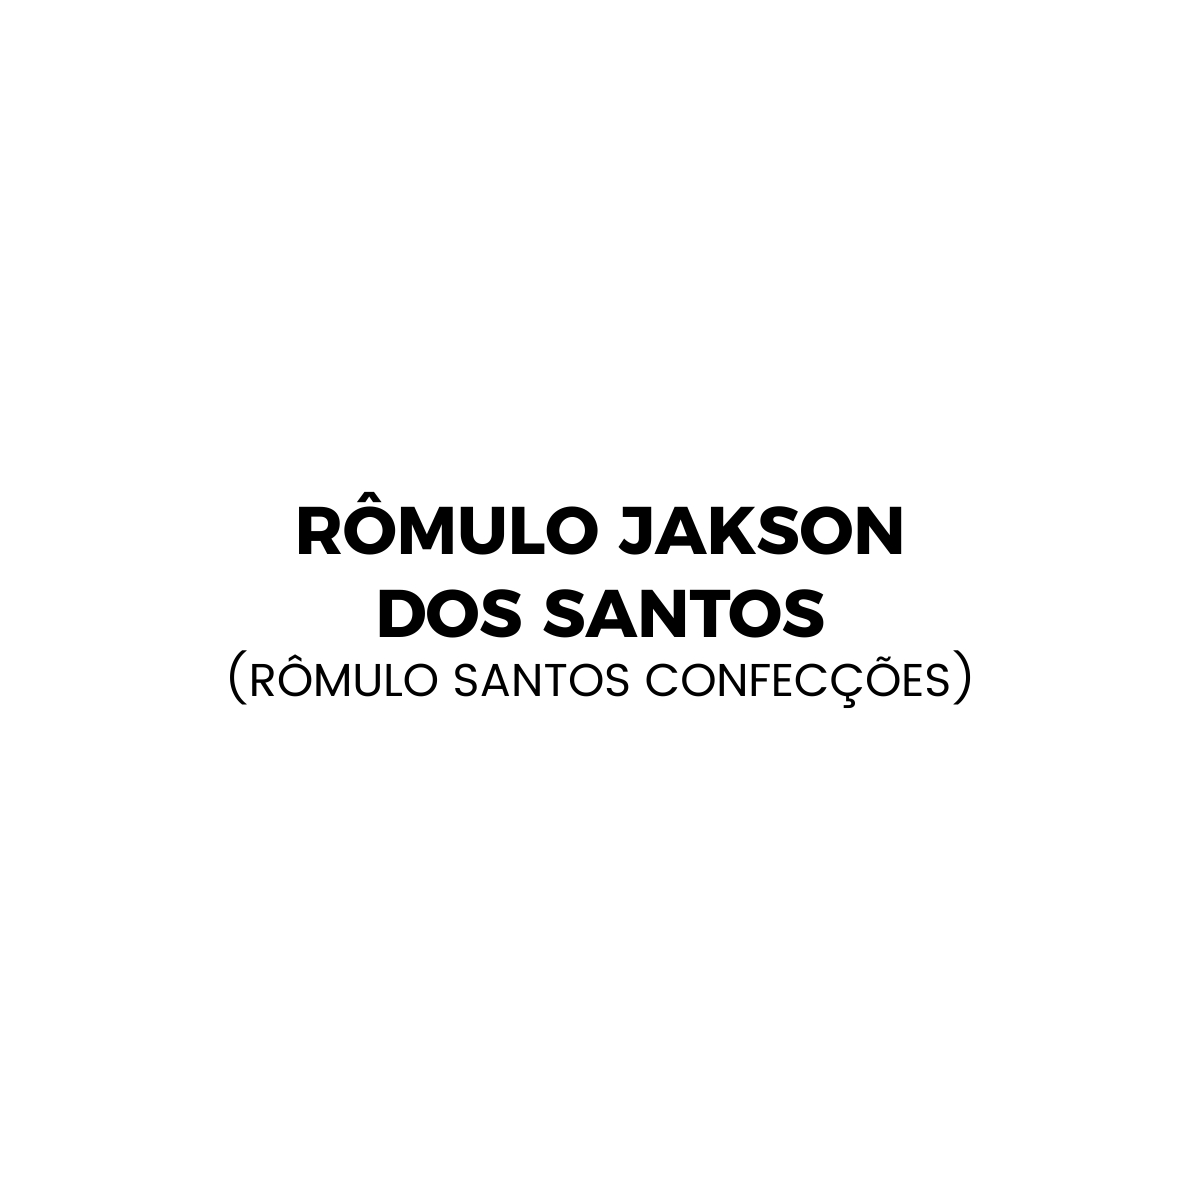 Rômulo Jakson dos Santos (Rômulo Santos Confecções)